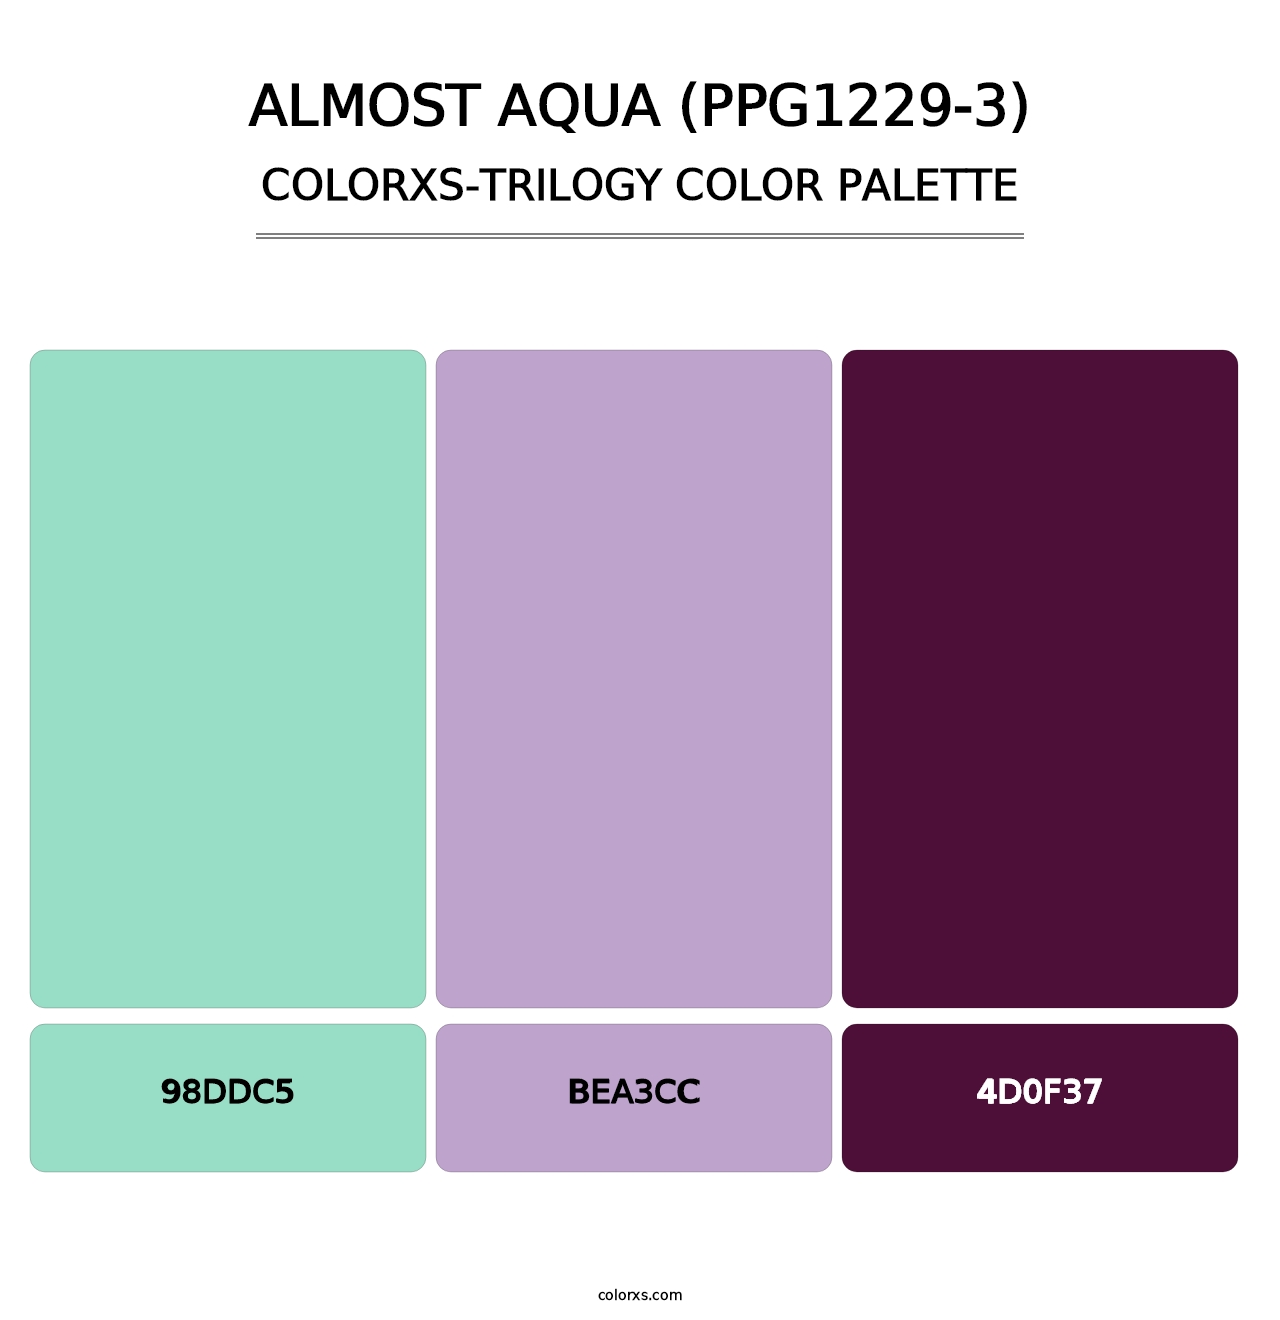 Almost Aqua (PPG1229-3) - Colorxs Trilogy Palette